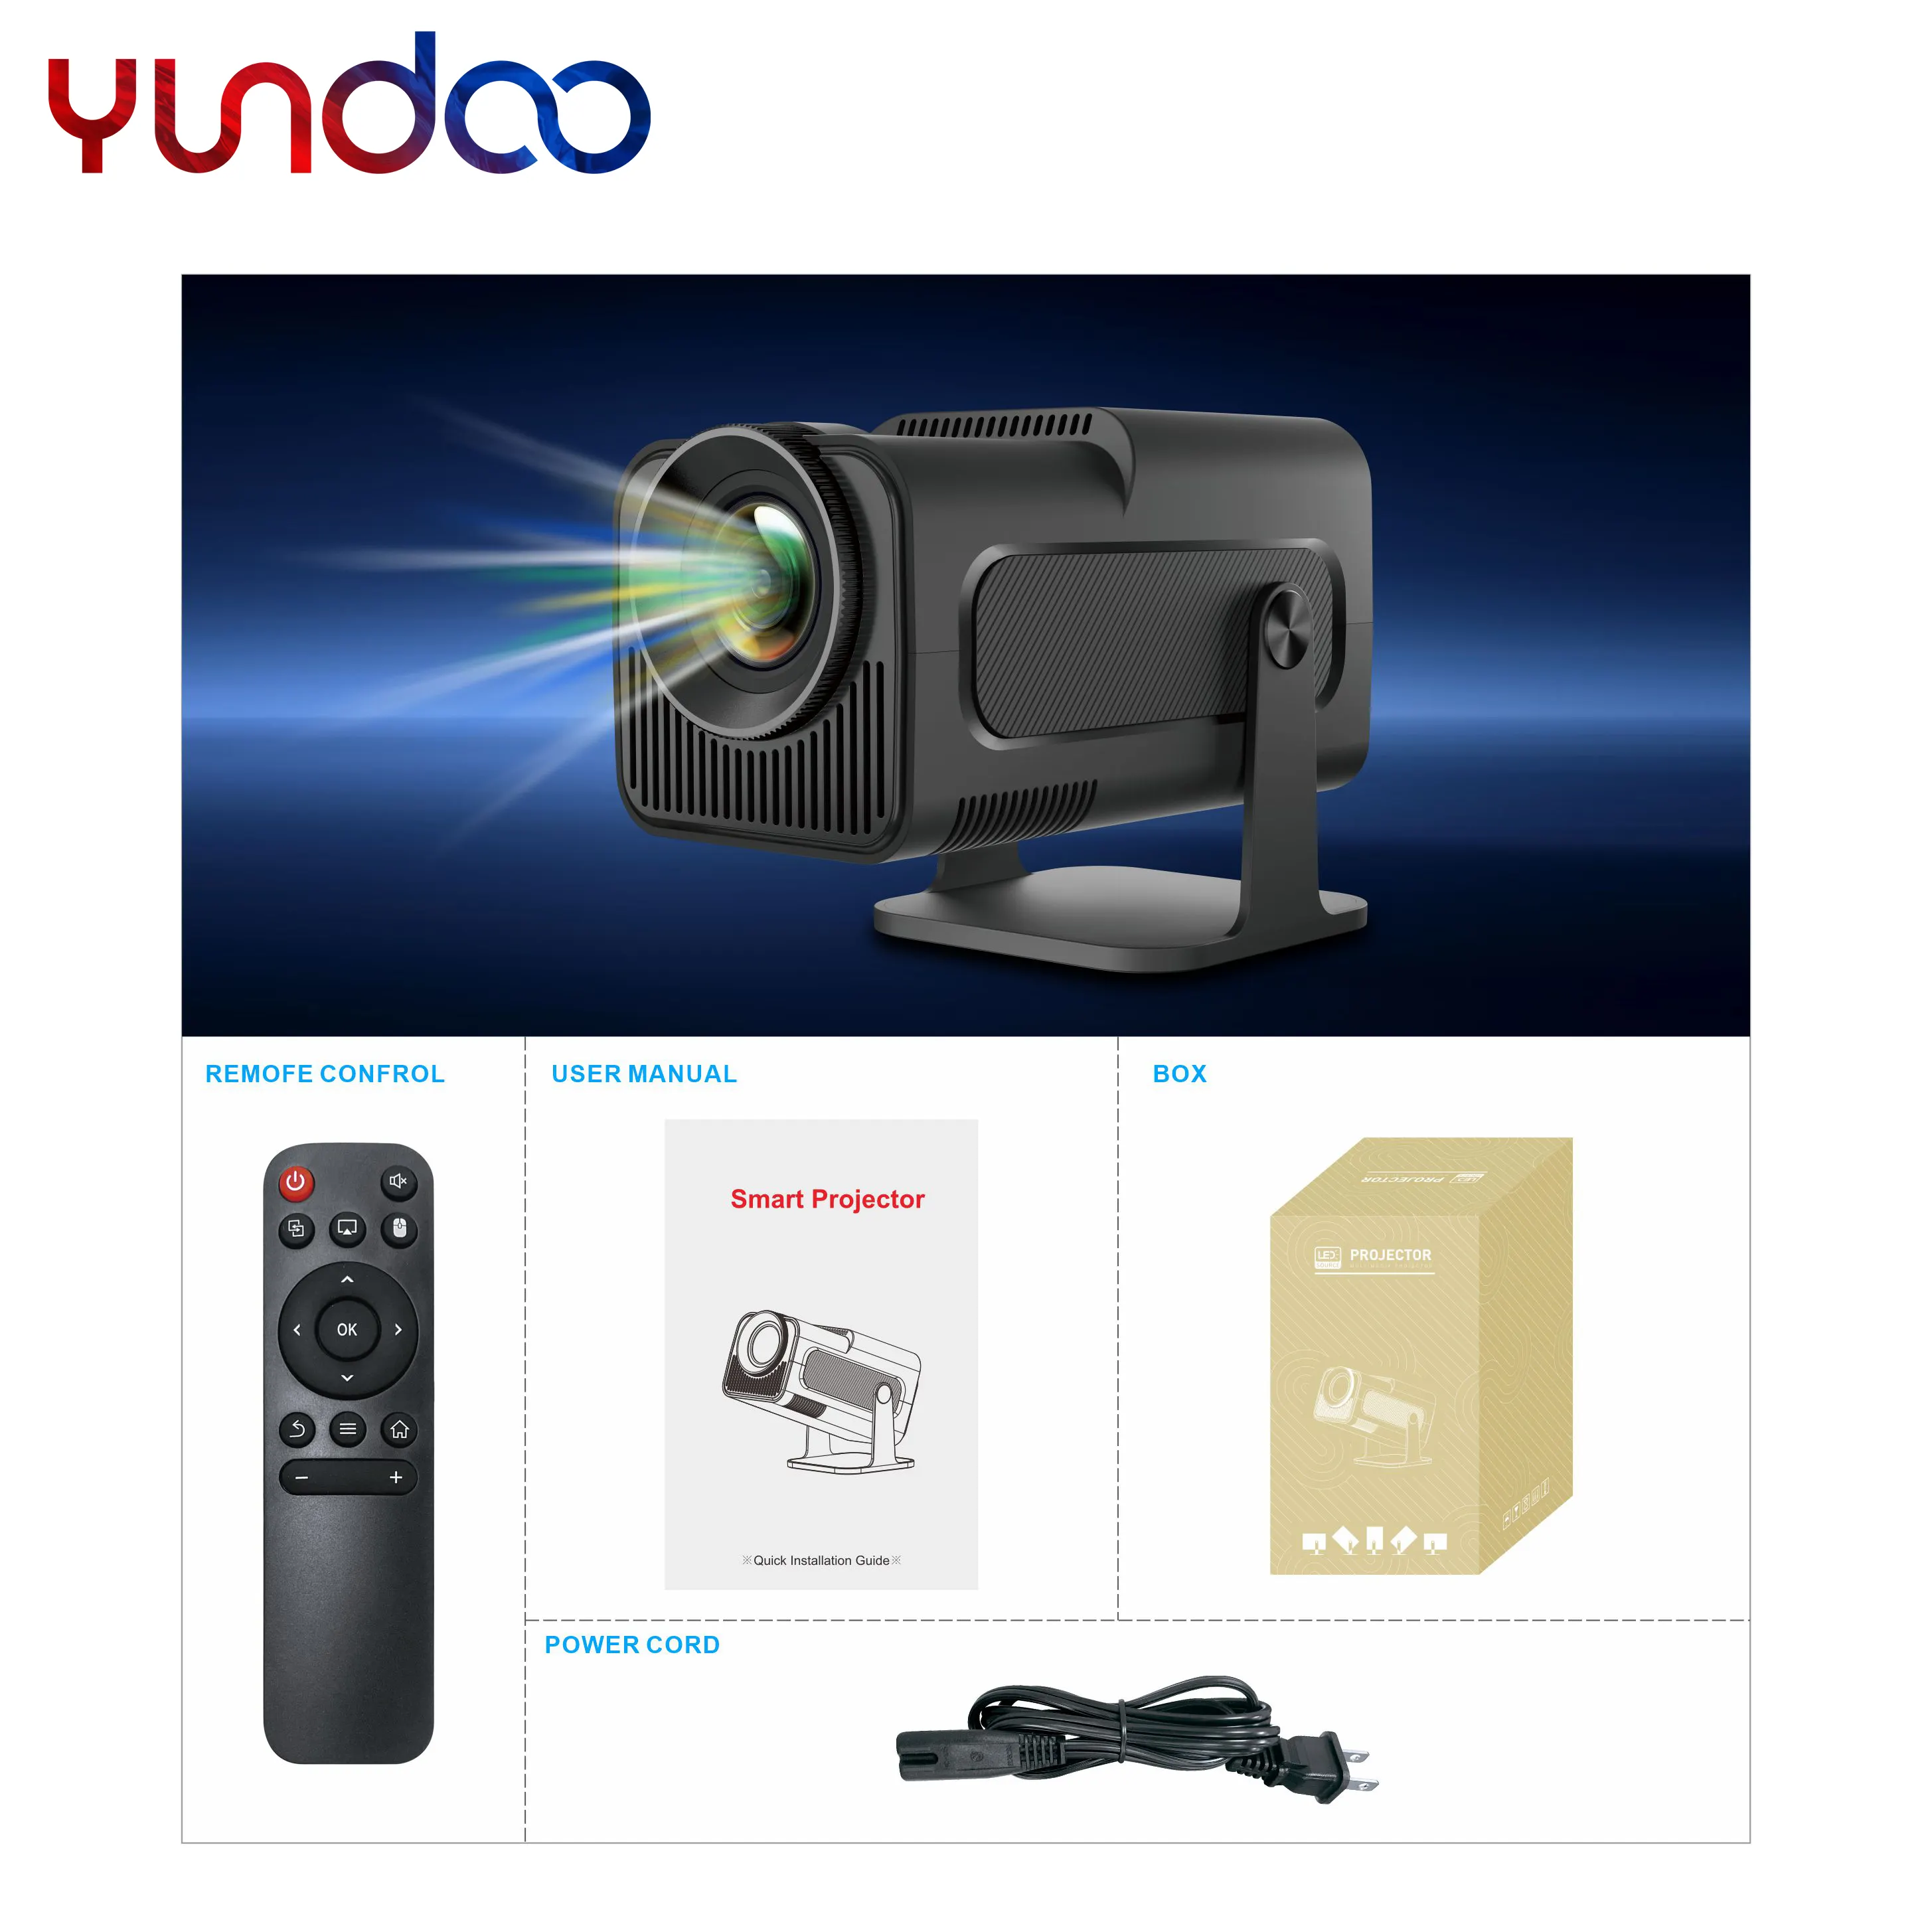 جهاز عرض صغير من YUNDOO ألعاب للأطفال مزودة بوصلة USB جهاز عرض صغير مزود بإضاءة ليد جهاز عرض فيديو براق لعرض المسرح المنزلي HY320 بدقة 1080 بكسل